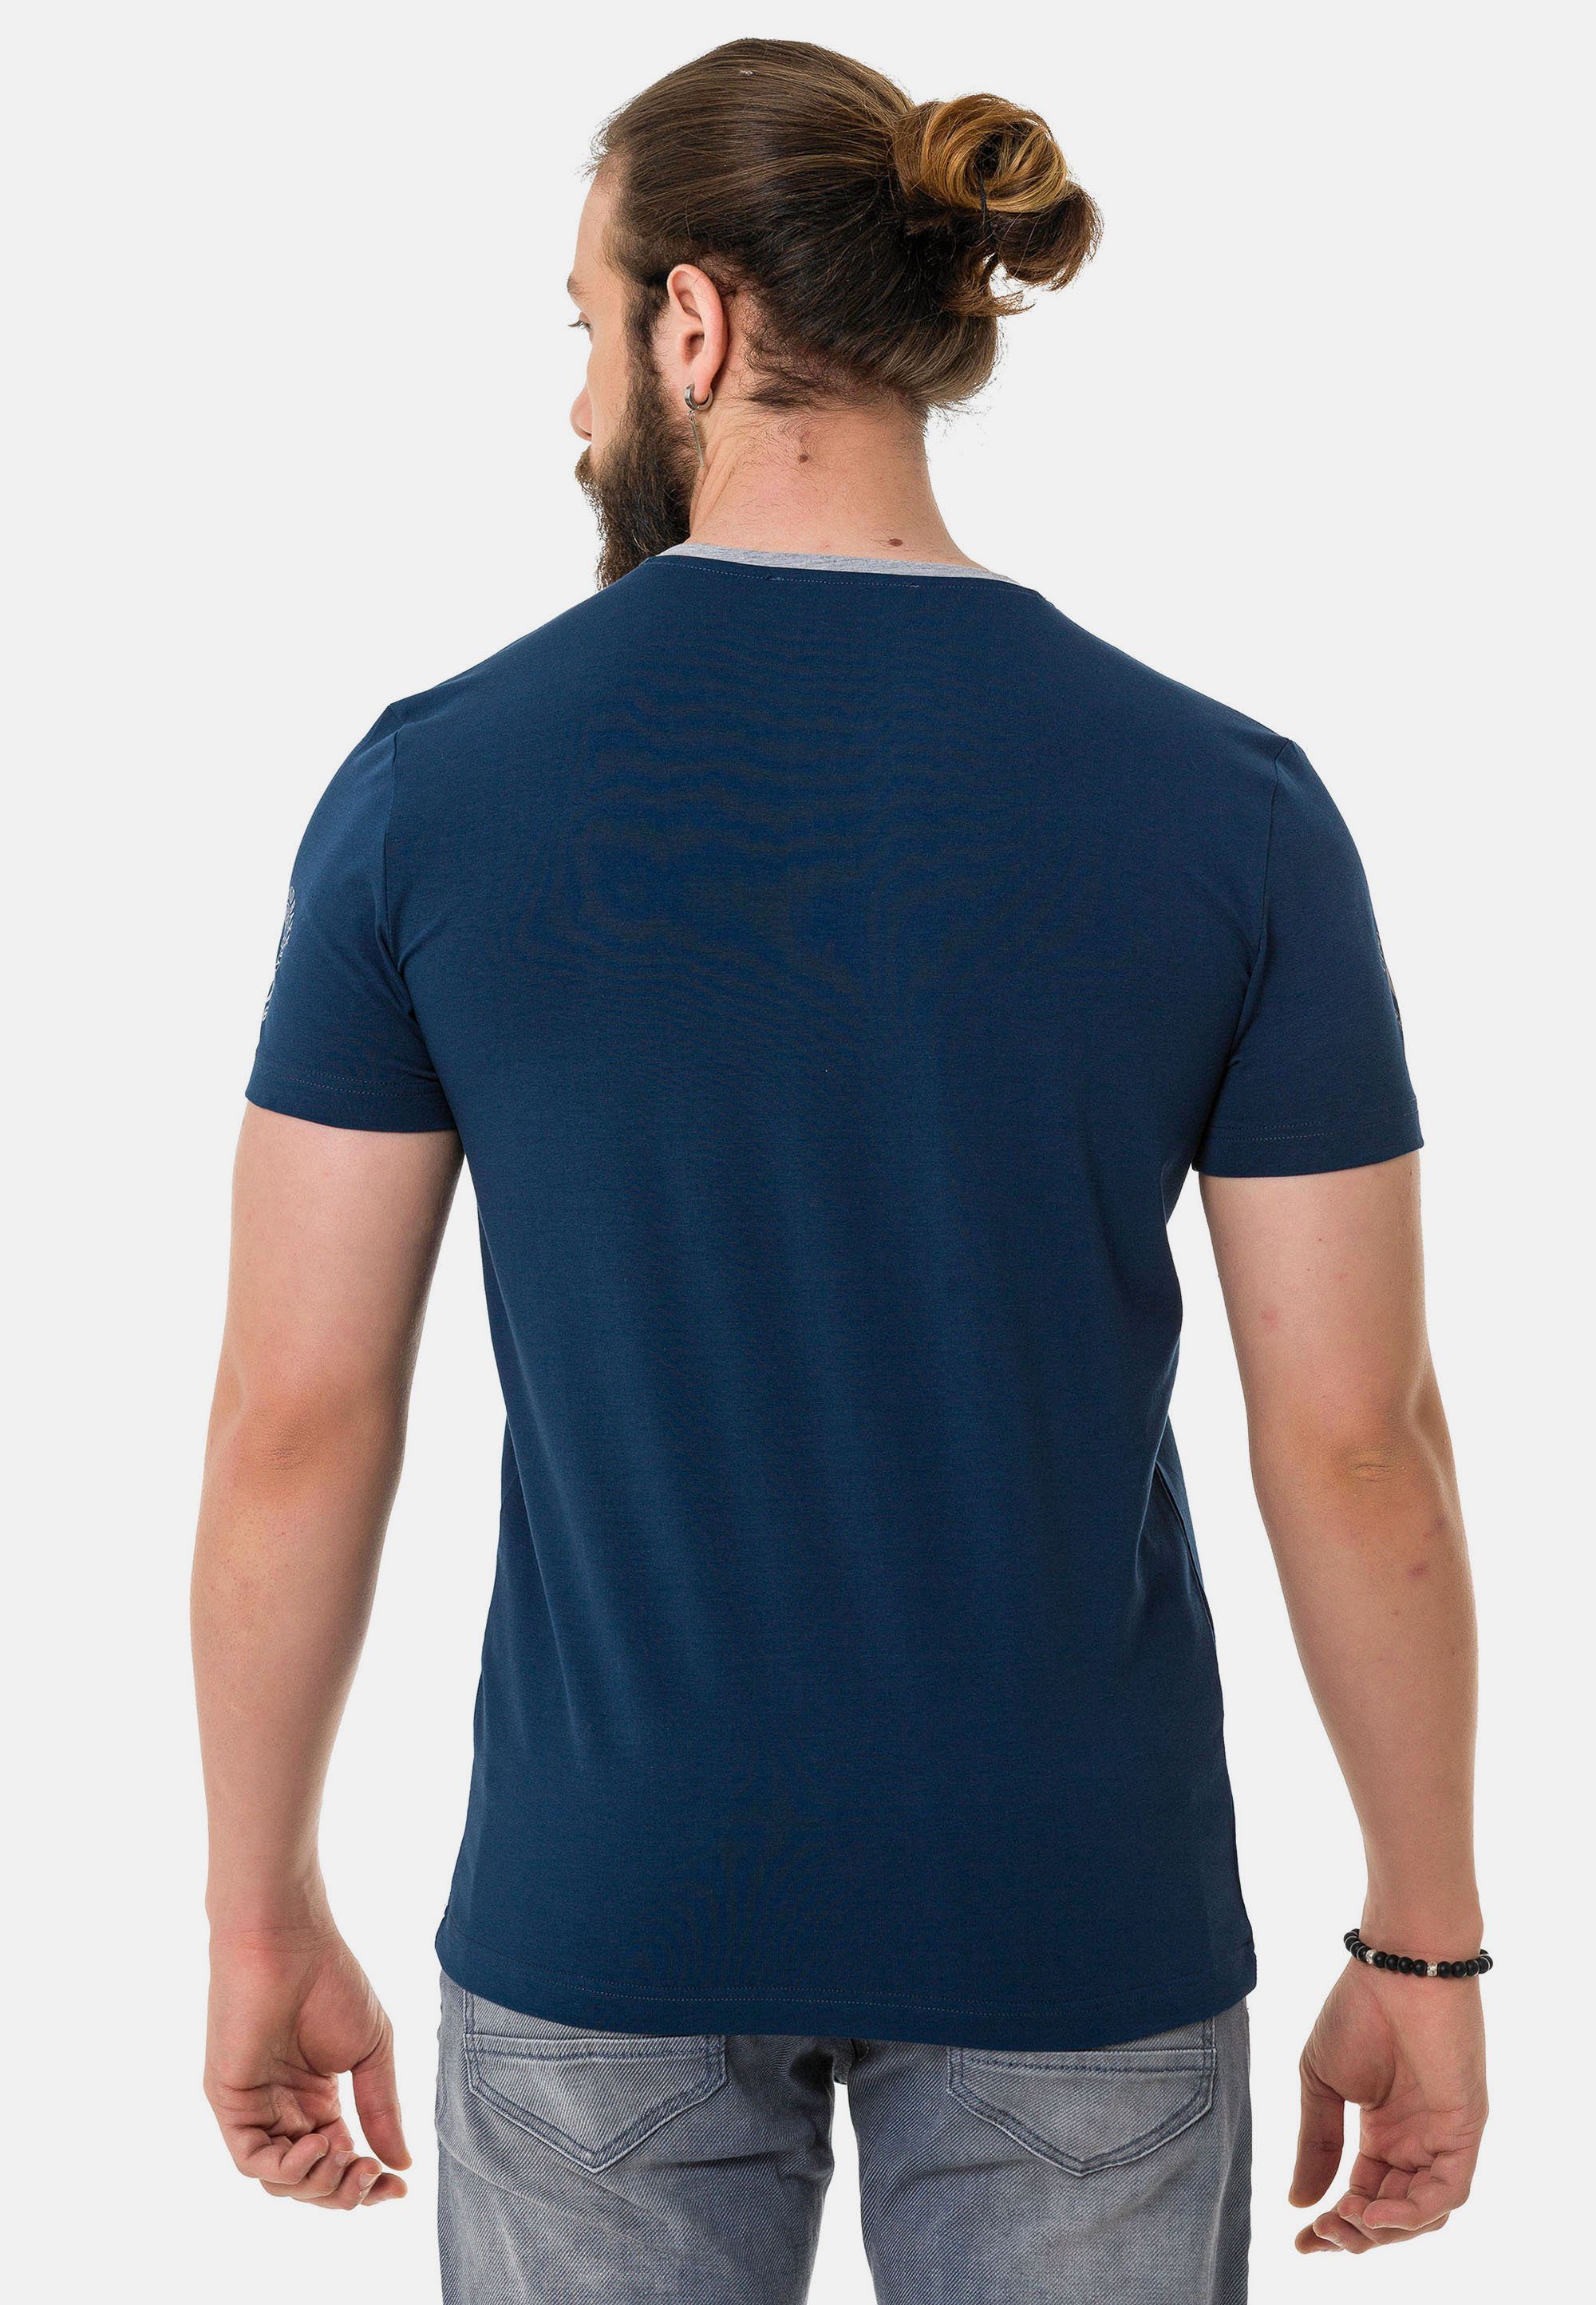 T-Shirt & Baxx dezenten Markenlogos mit blau Cipo